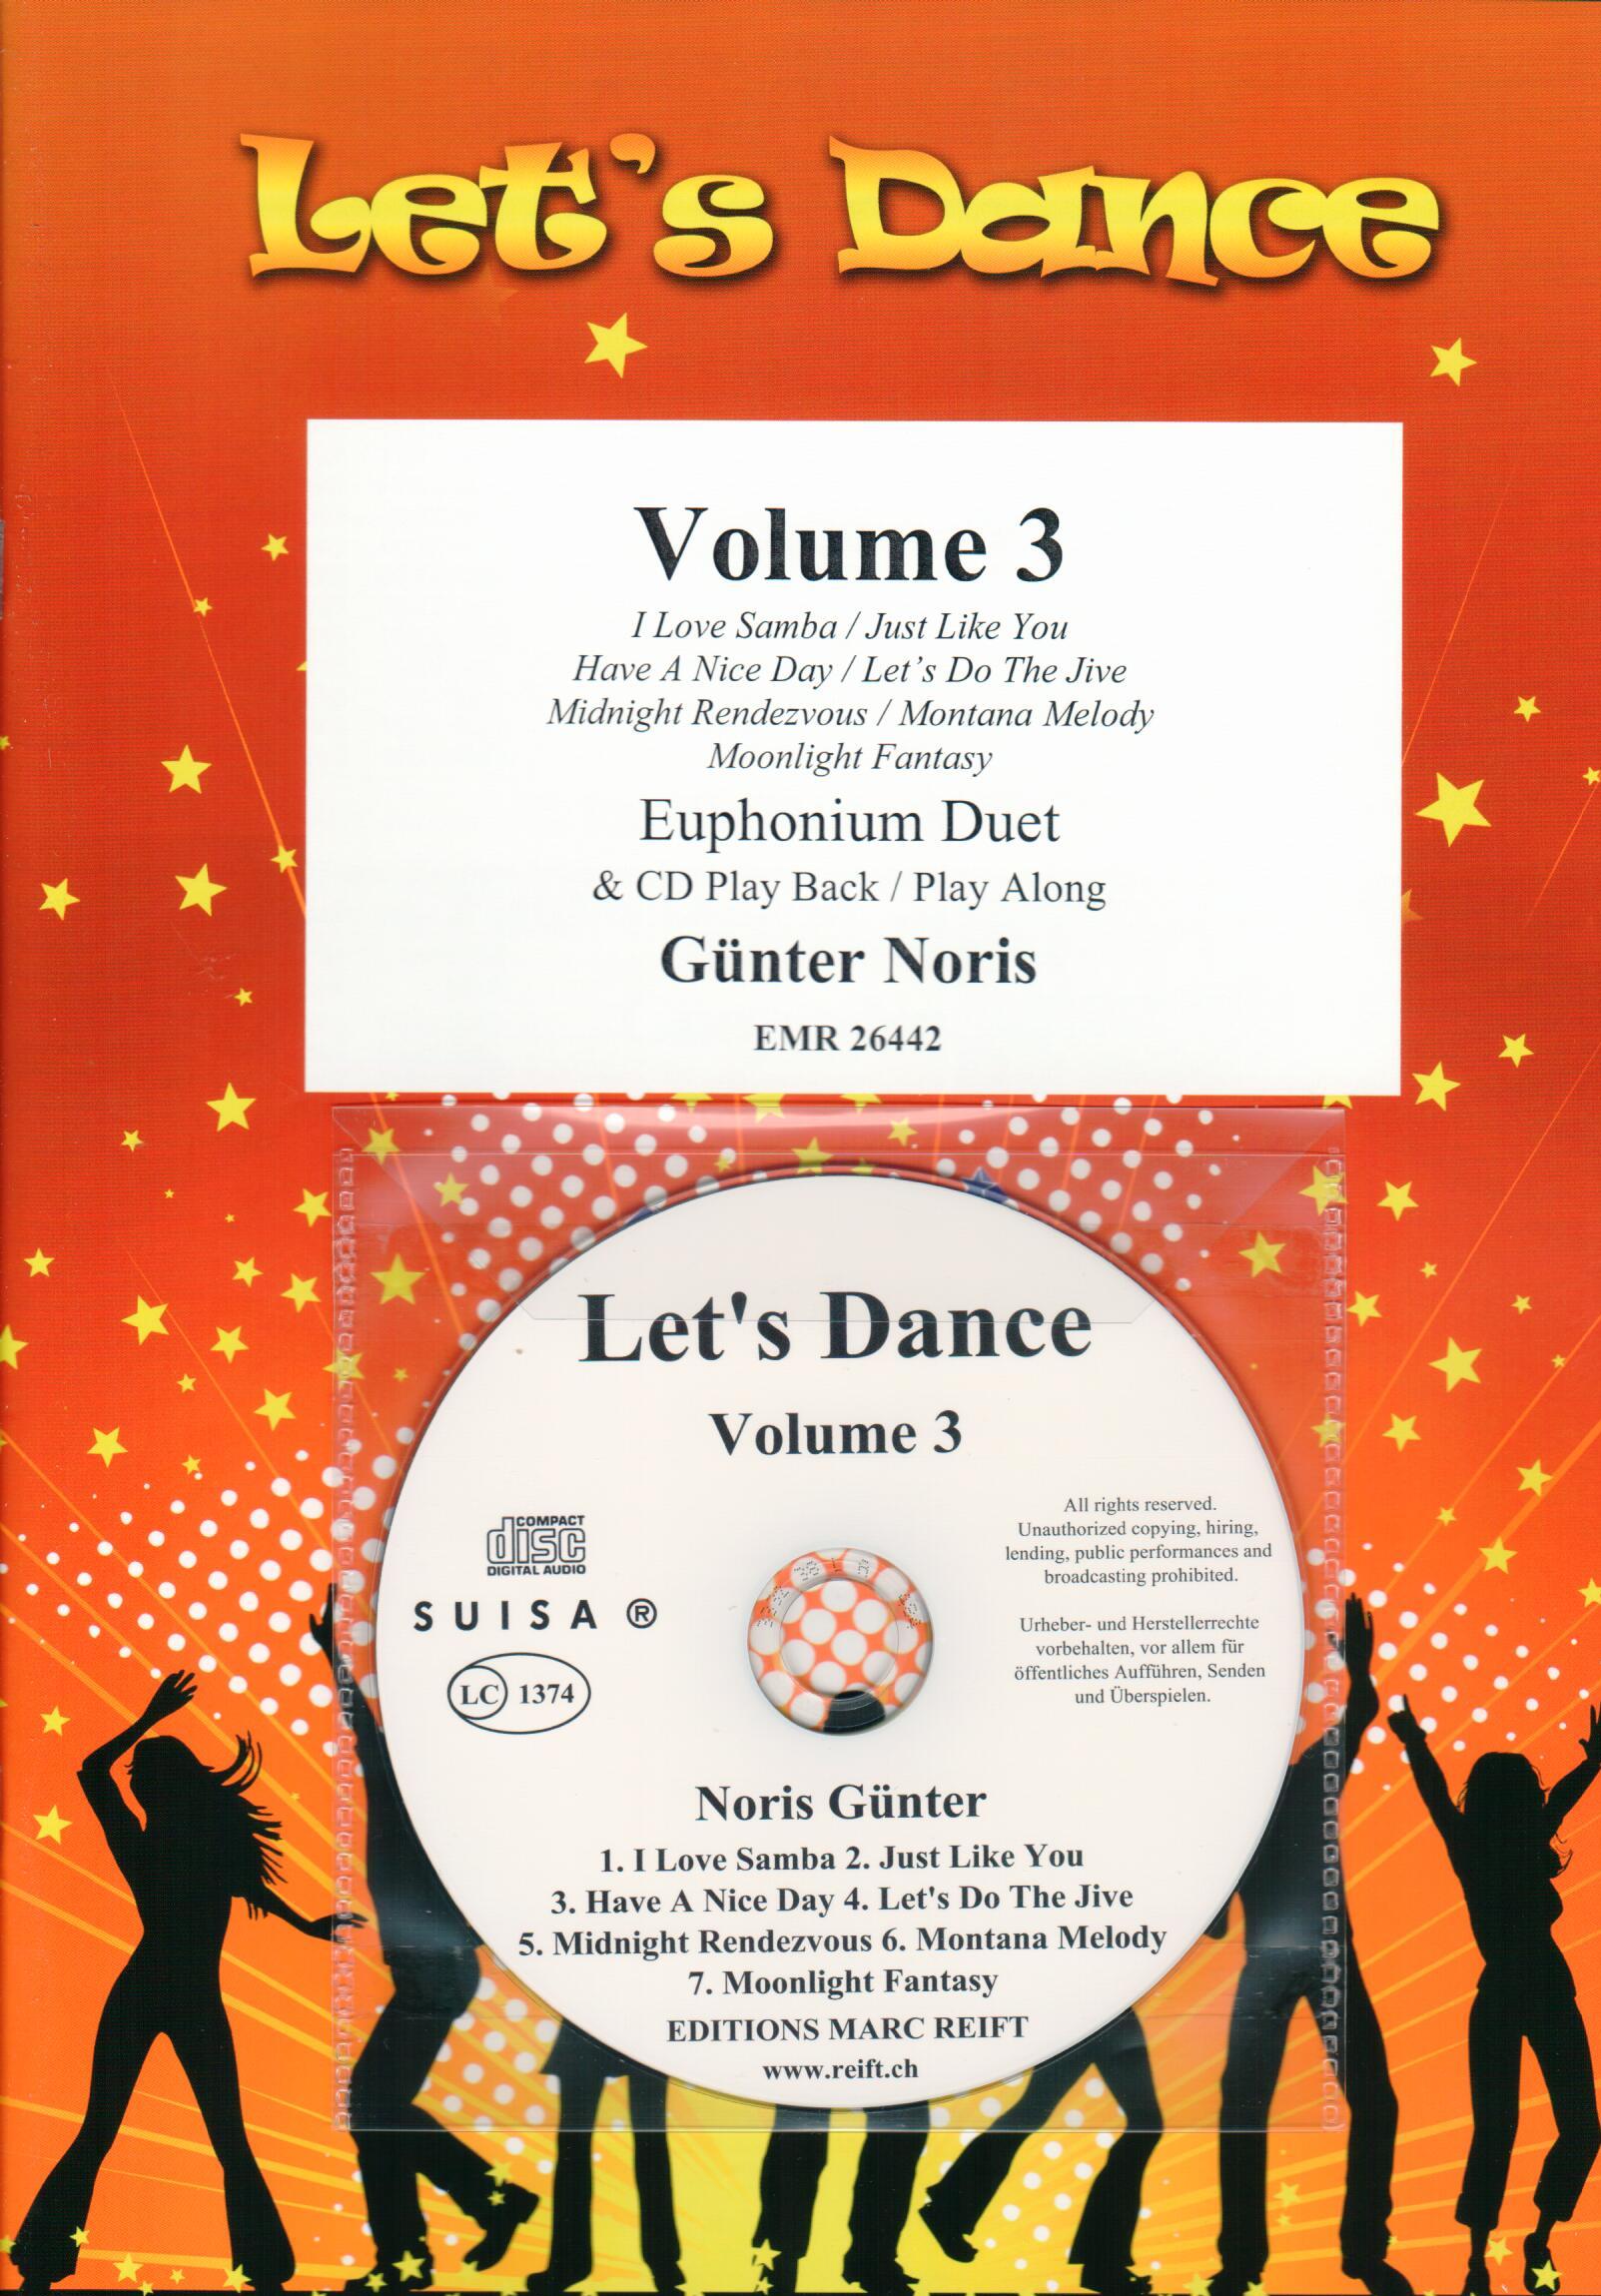 LET'S DANCE VOLUME 3, SOLOS - Euphonium